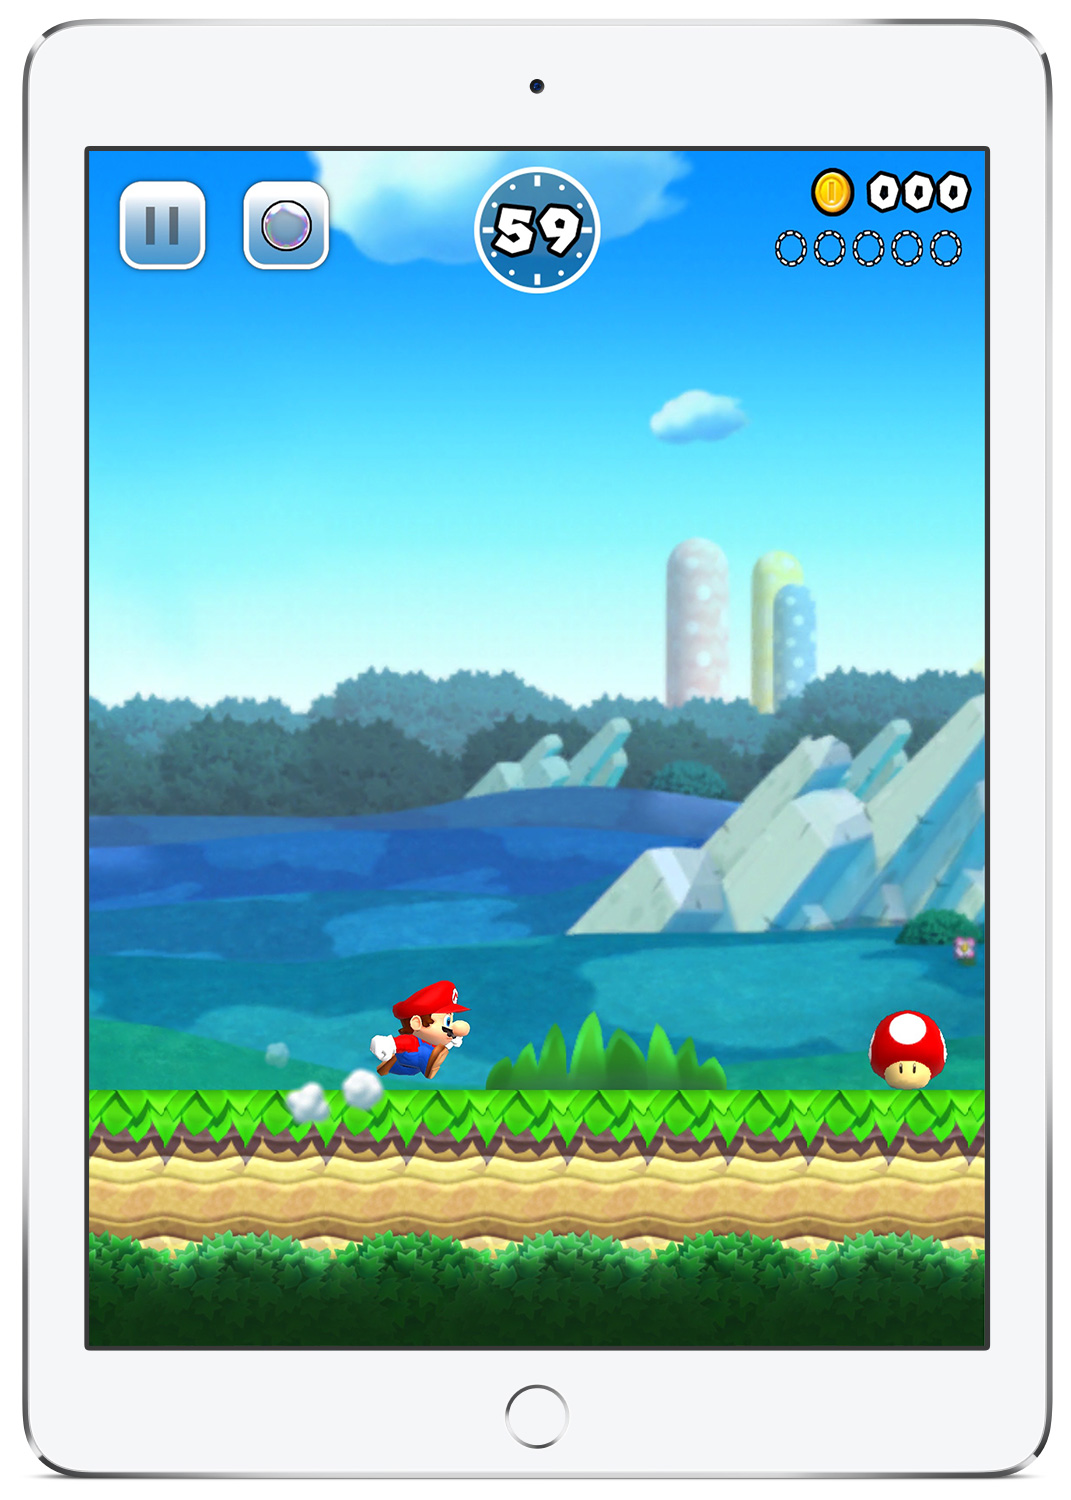 續報!! SUPER Mario Run  Ios版12月15日上架！